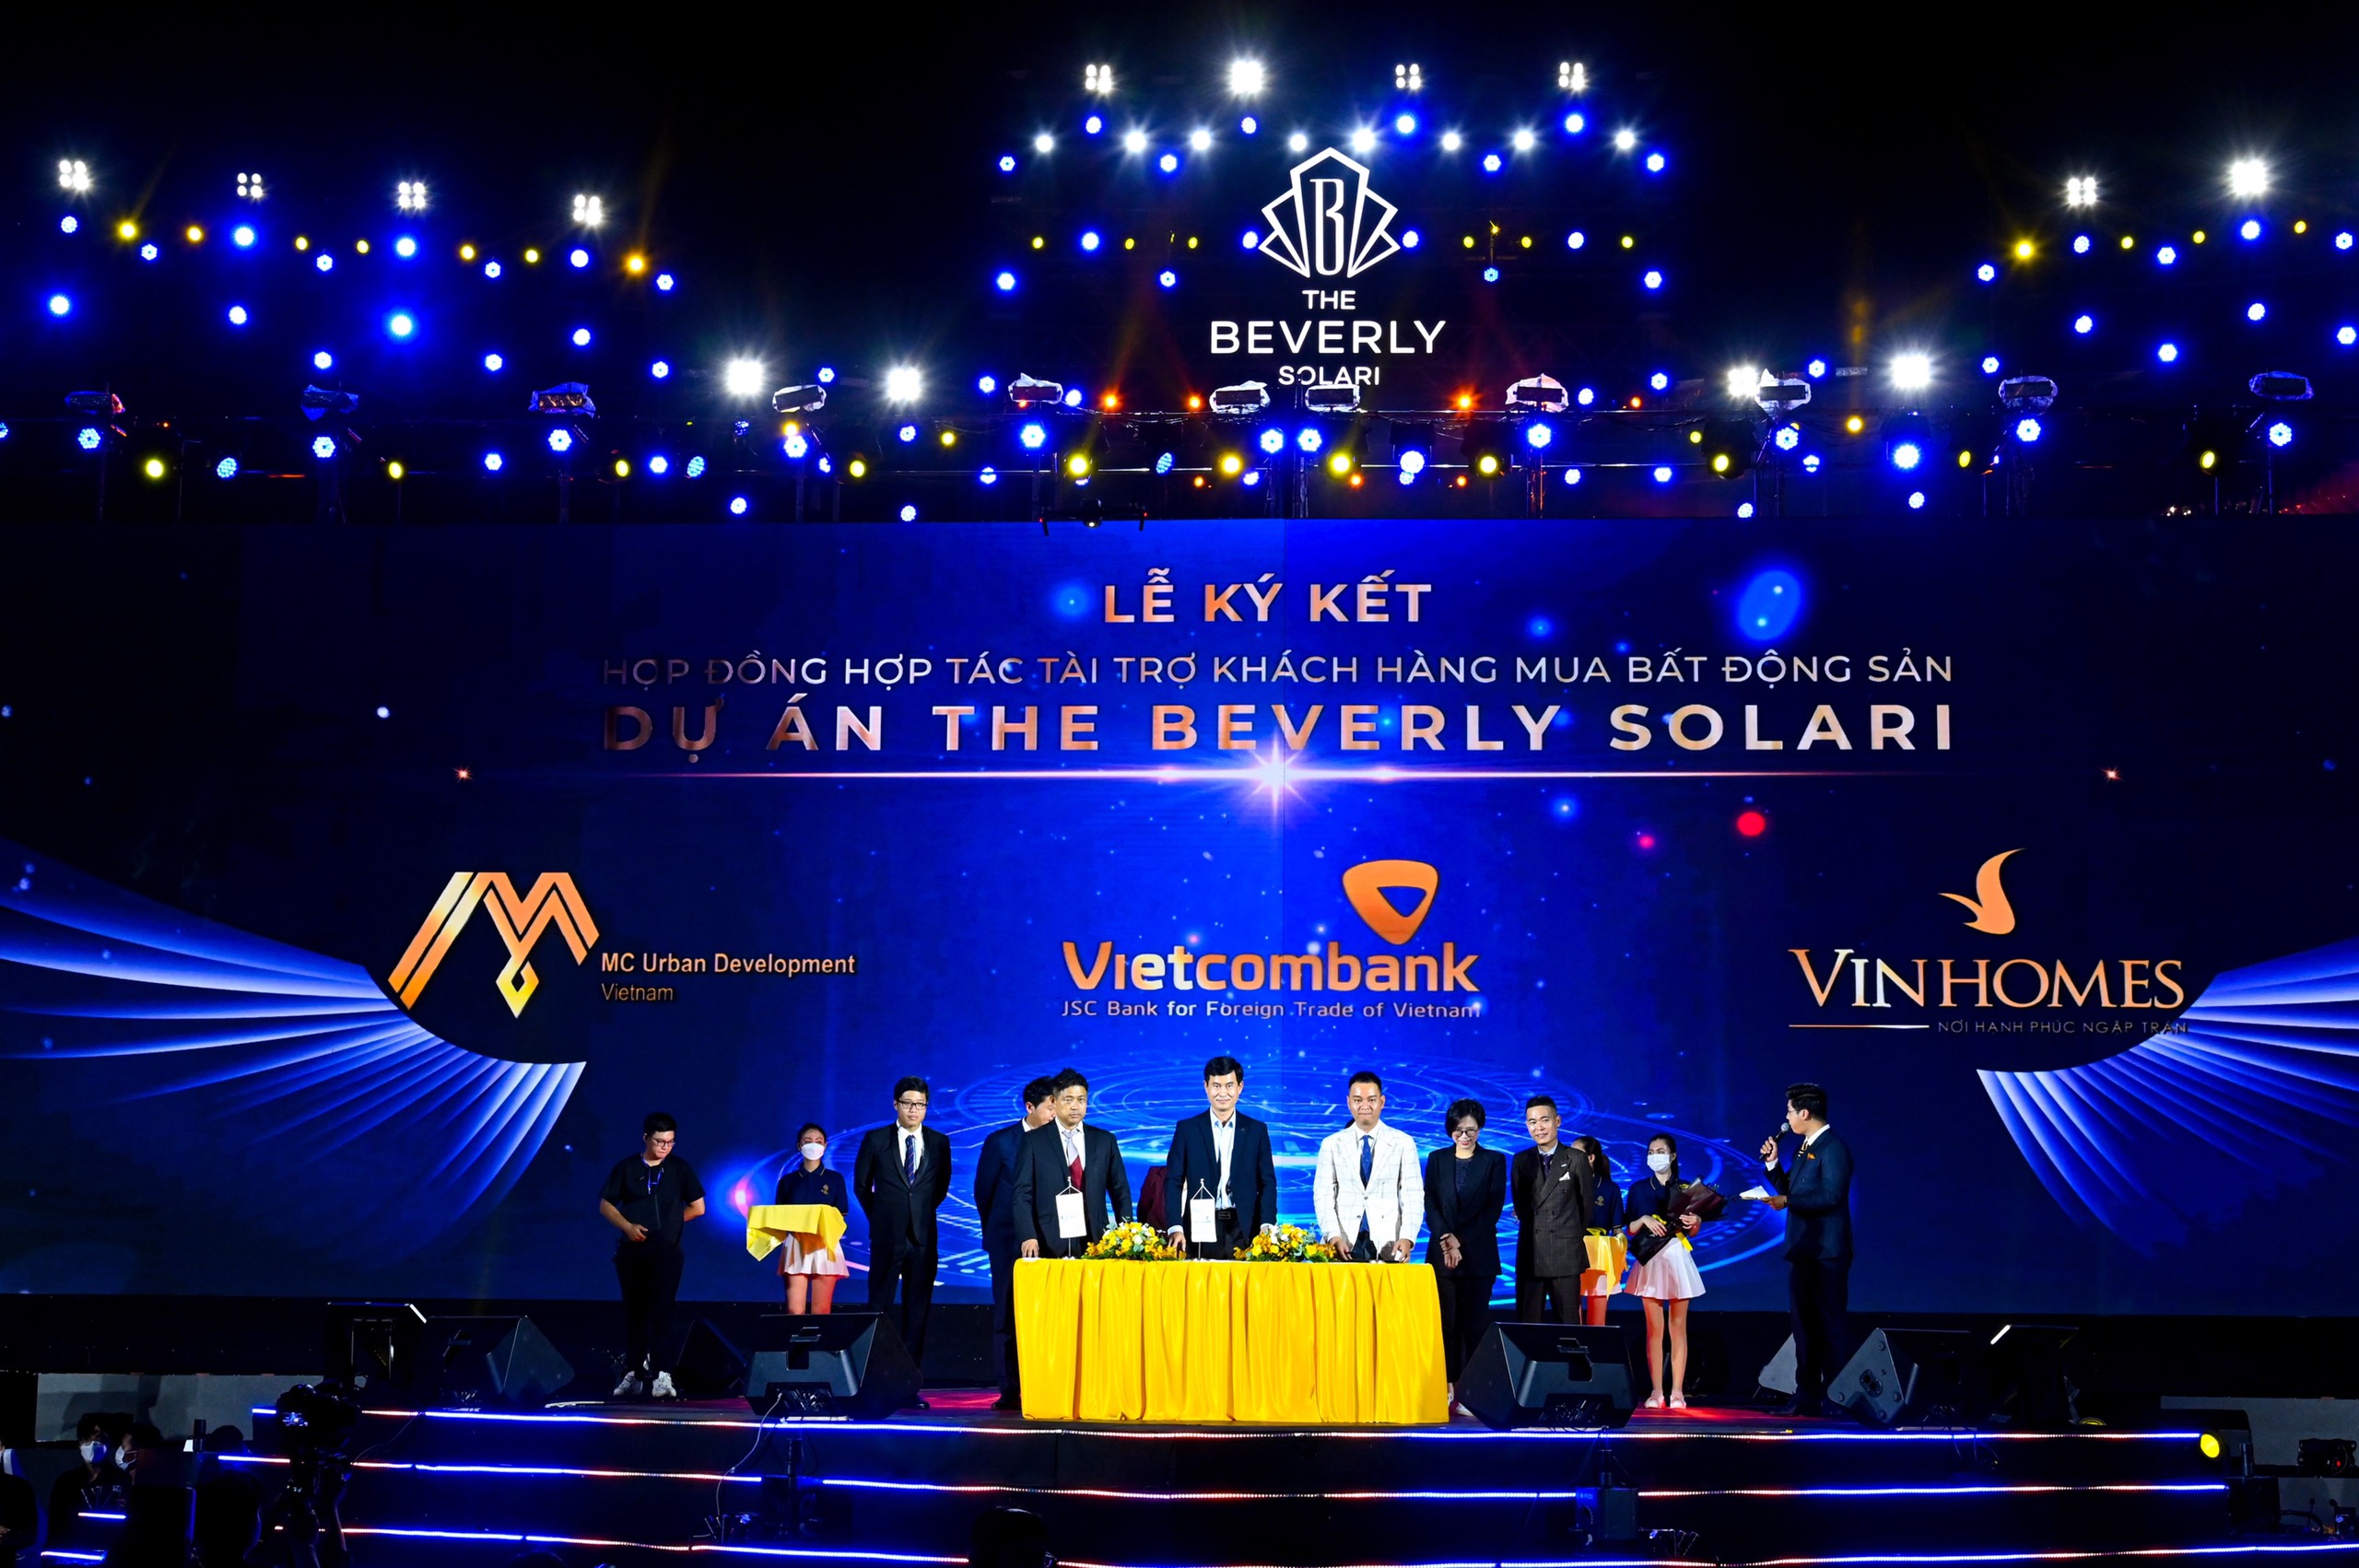 Ngân hàng Vietcombank ký kết hợp tác với dự án The Beverly Solari